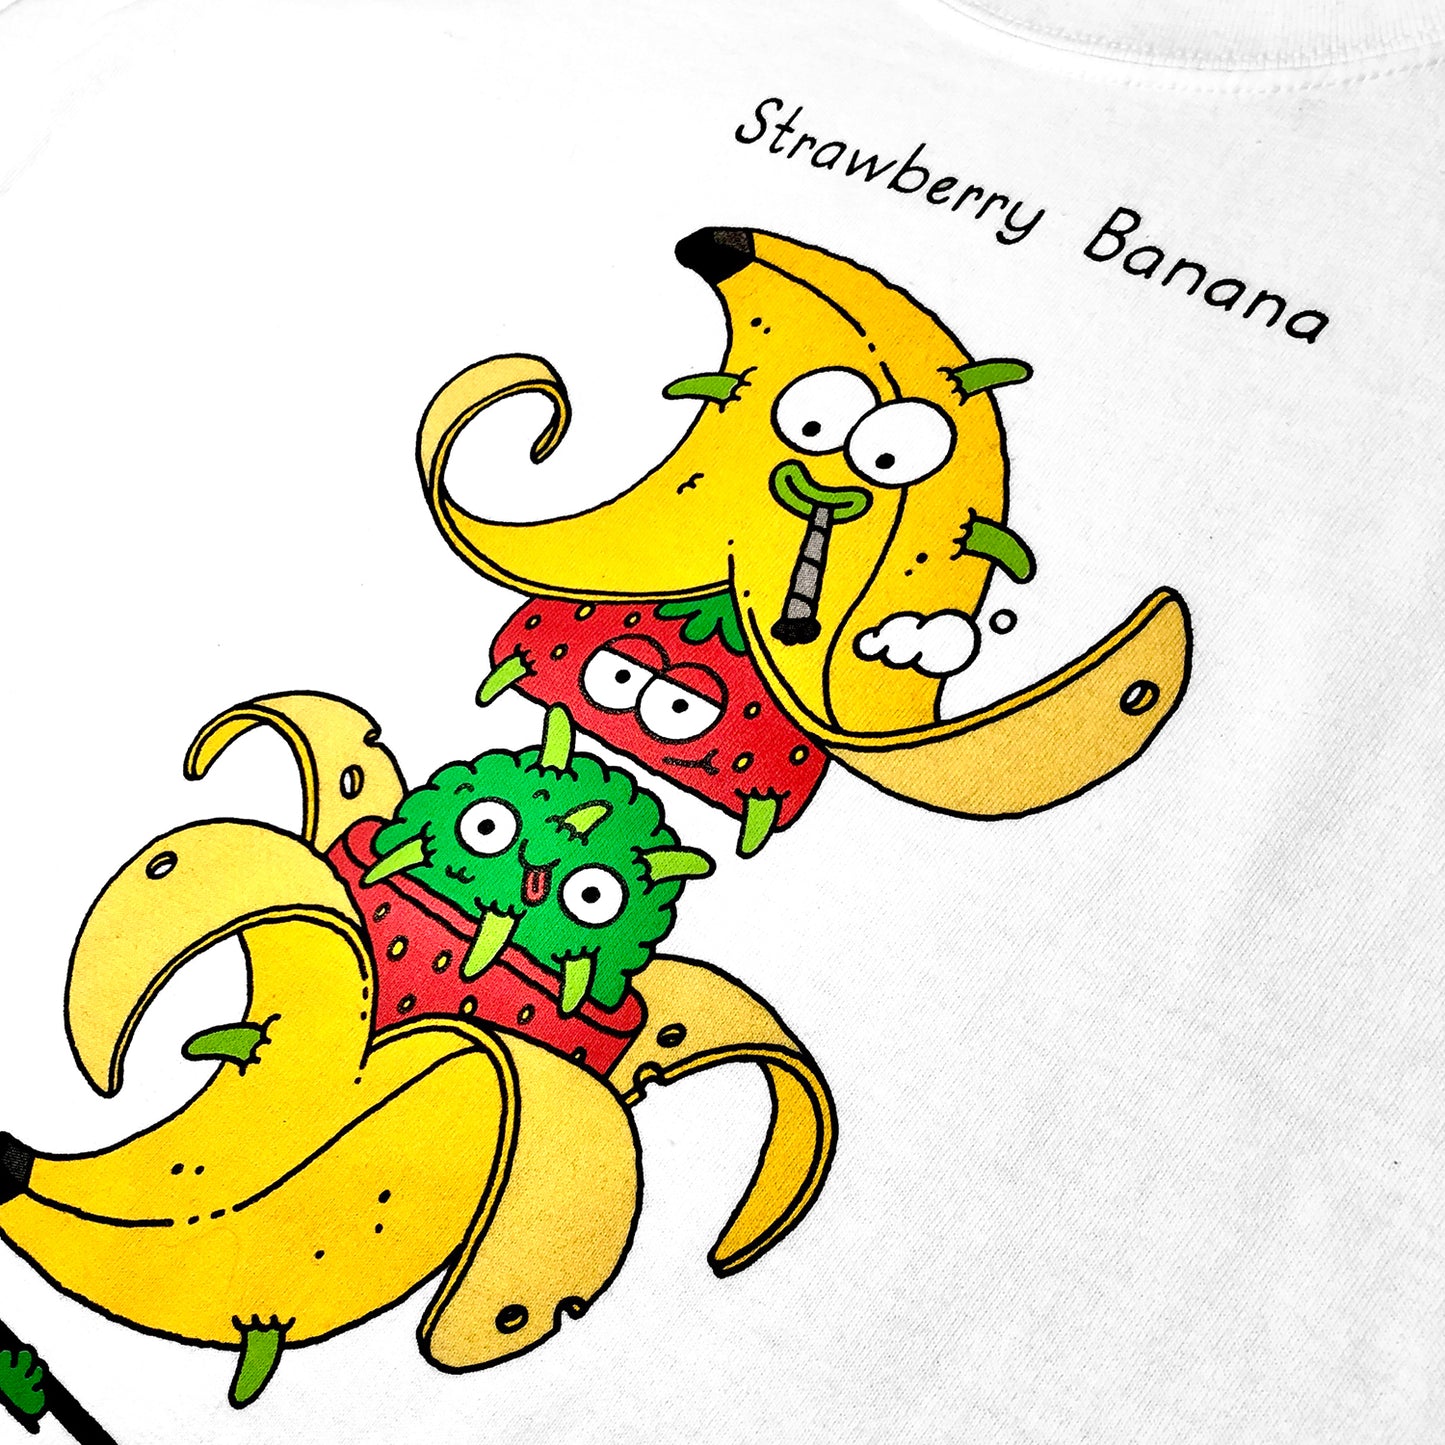 SOTD - Strawberry Banana